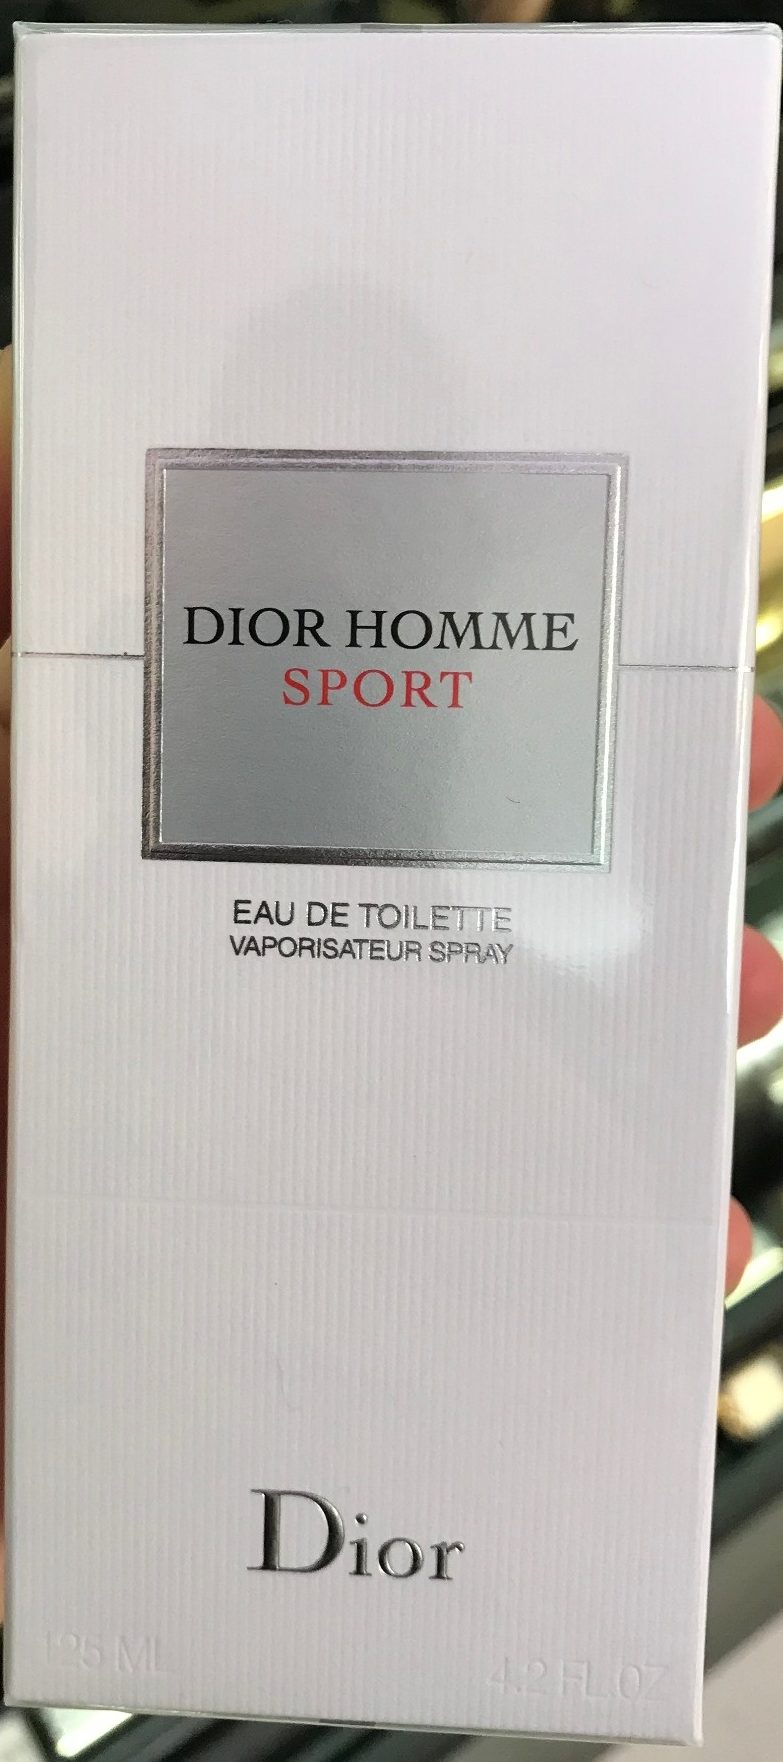 Dior Homme Sport - Eau de Toilette - Product - fr